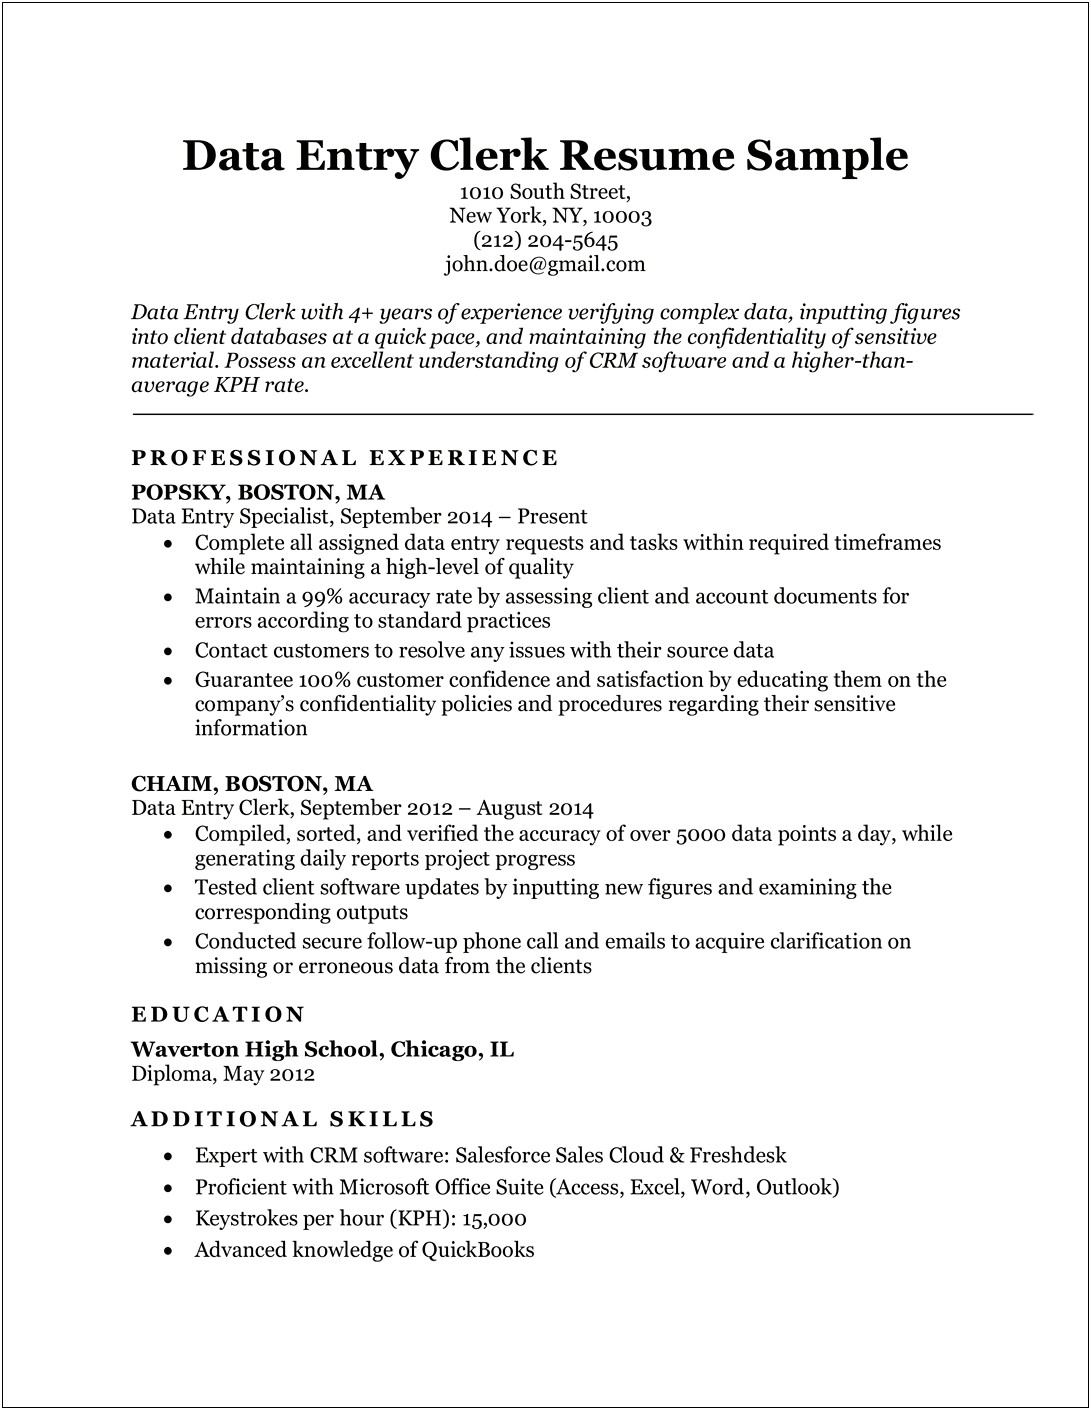 Data Entry Administrator Resume Sample